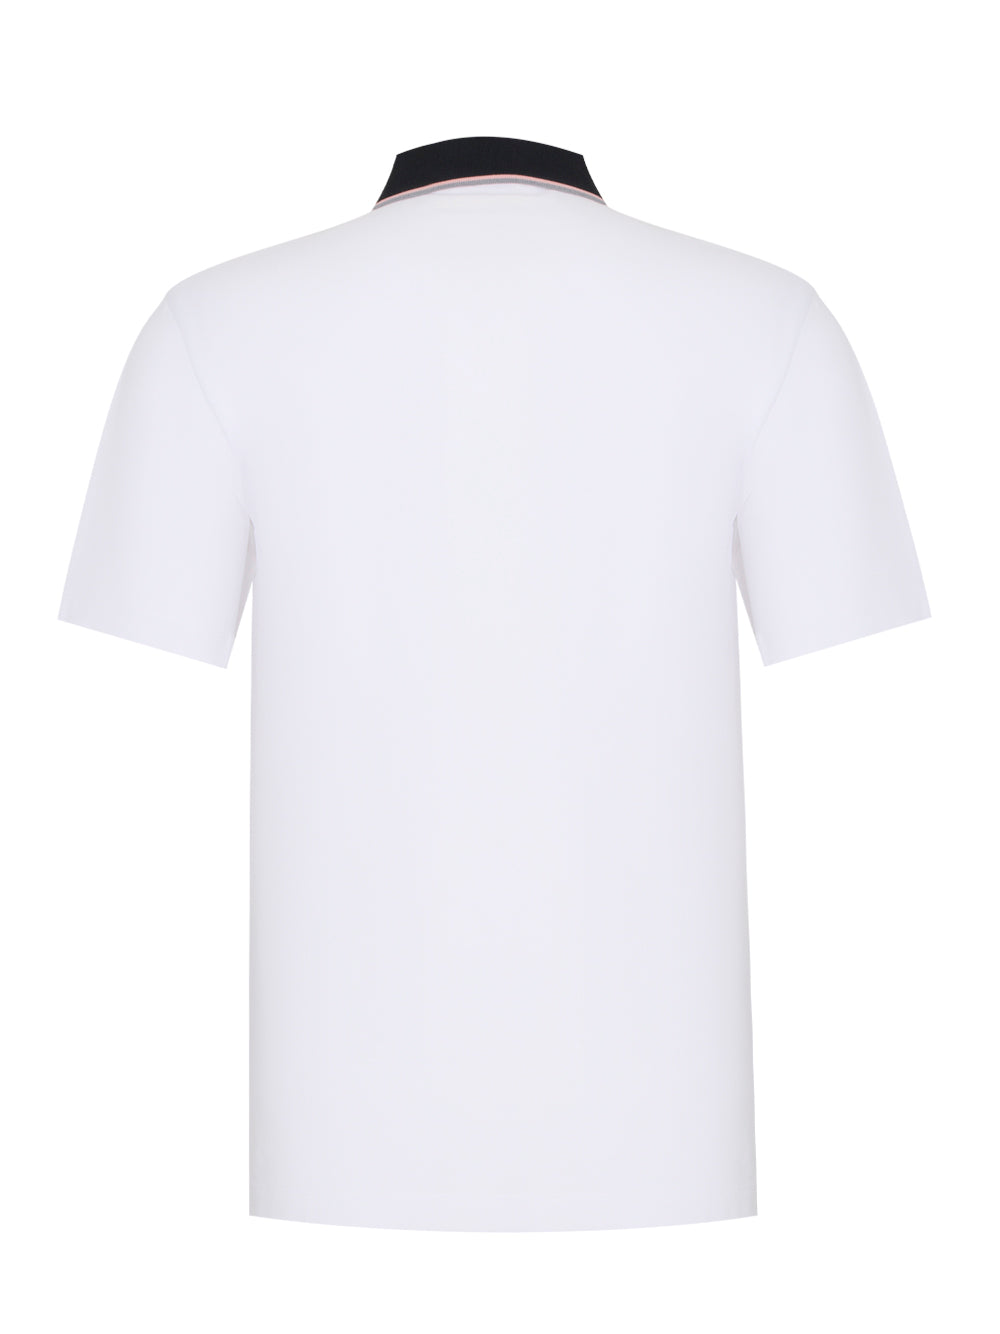 Pique Hidden Placket Short Sleeves Polo Tee (White)